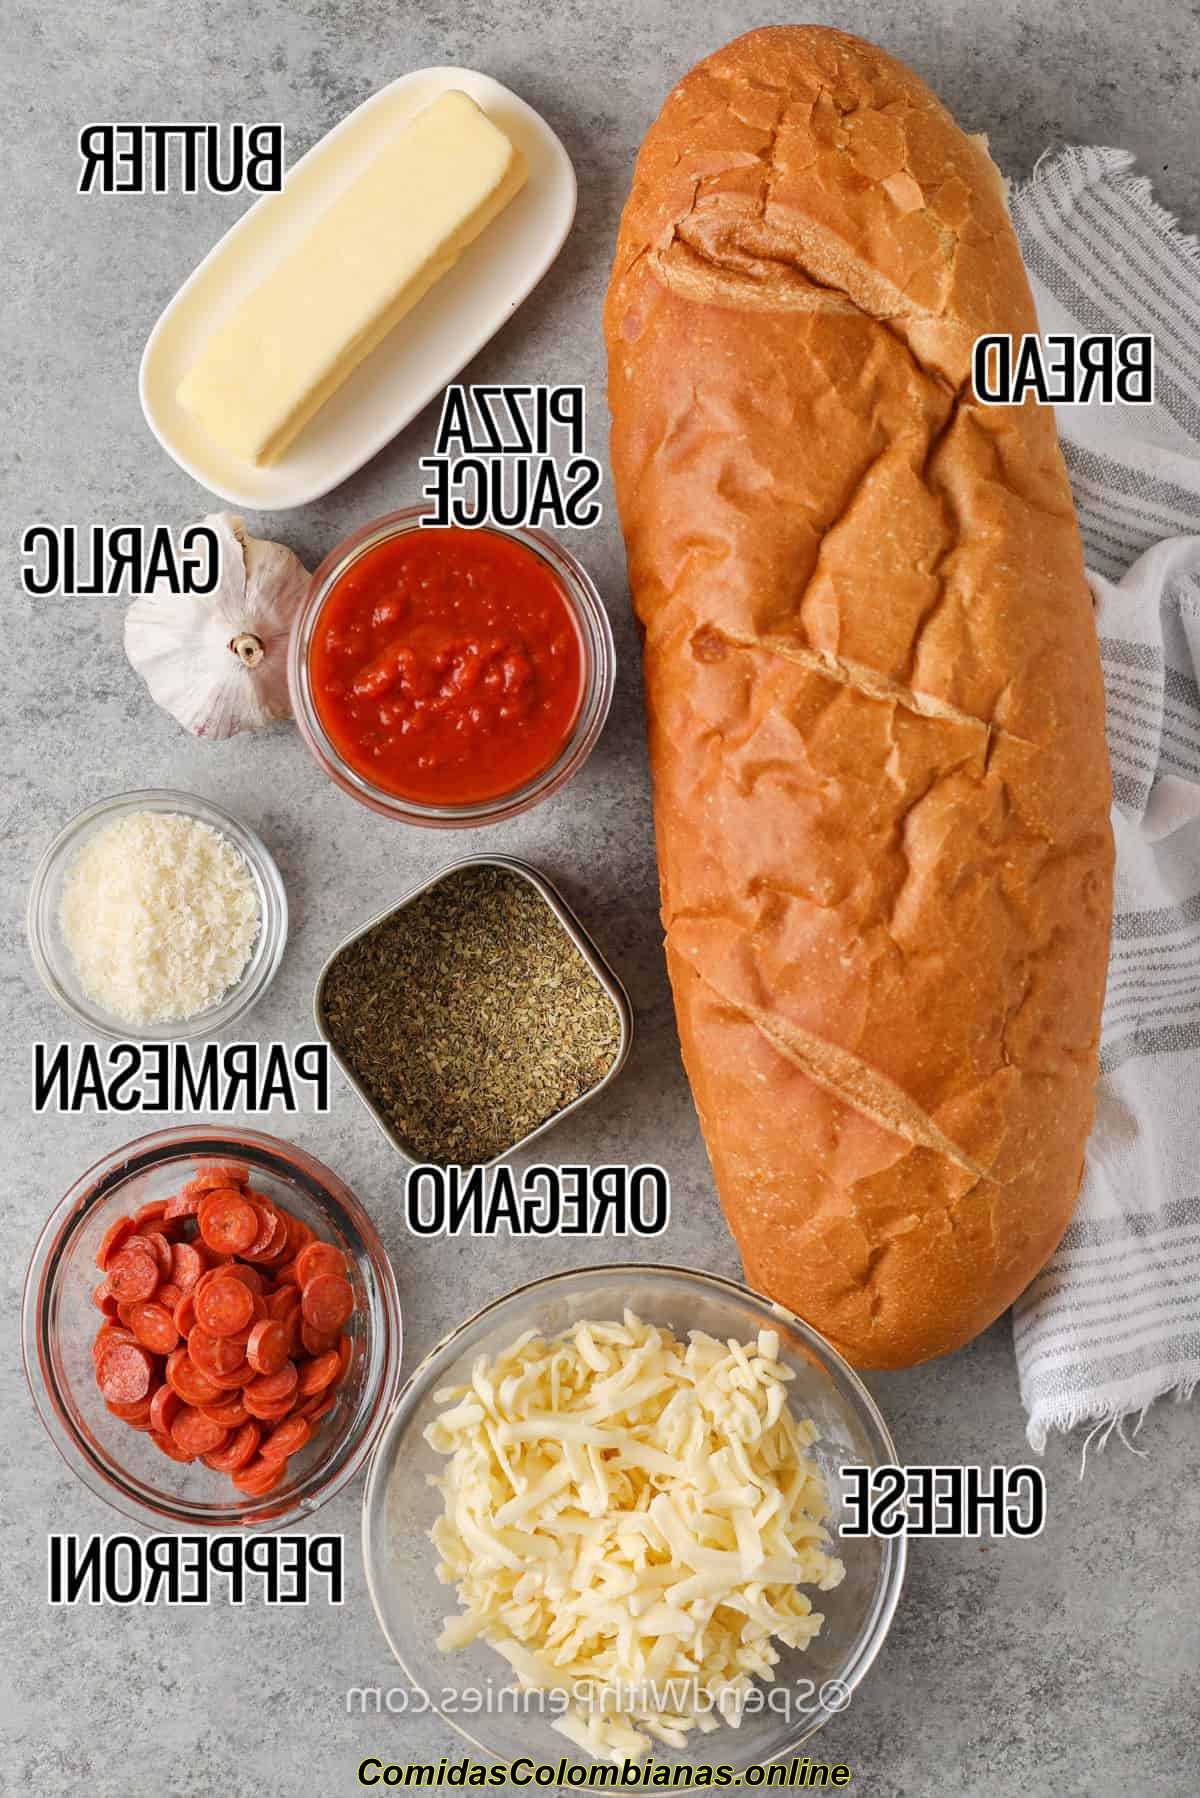 Ingredientes da pizza de pão francês com rótulos